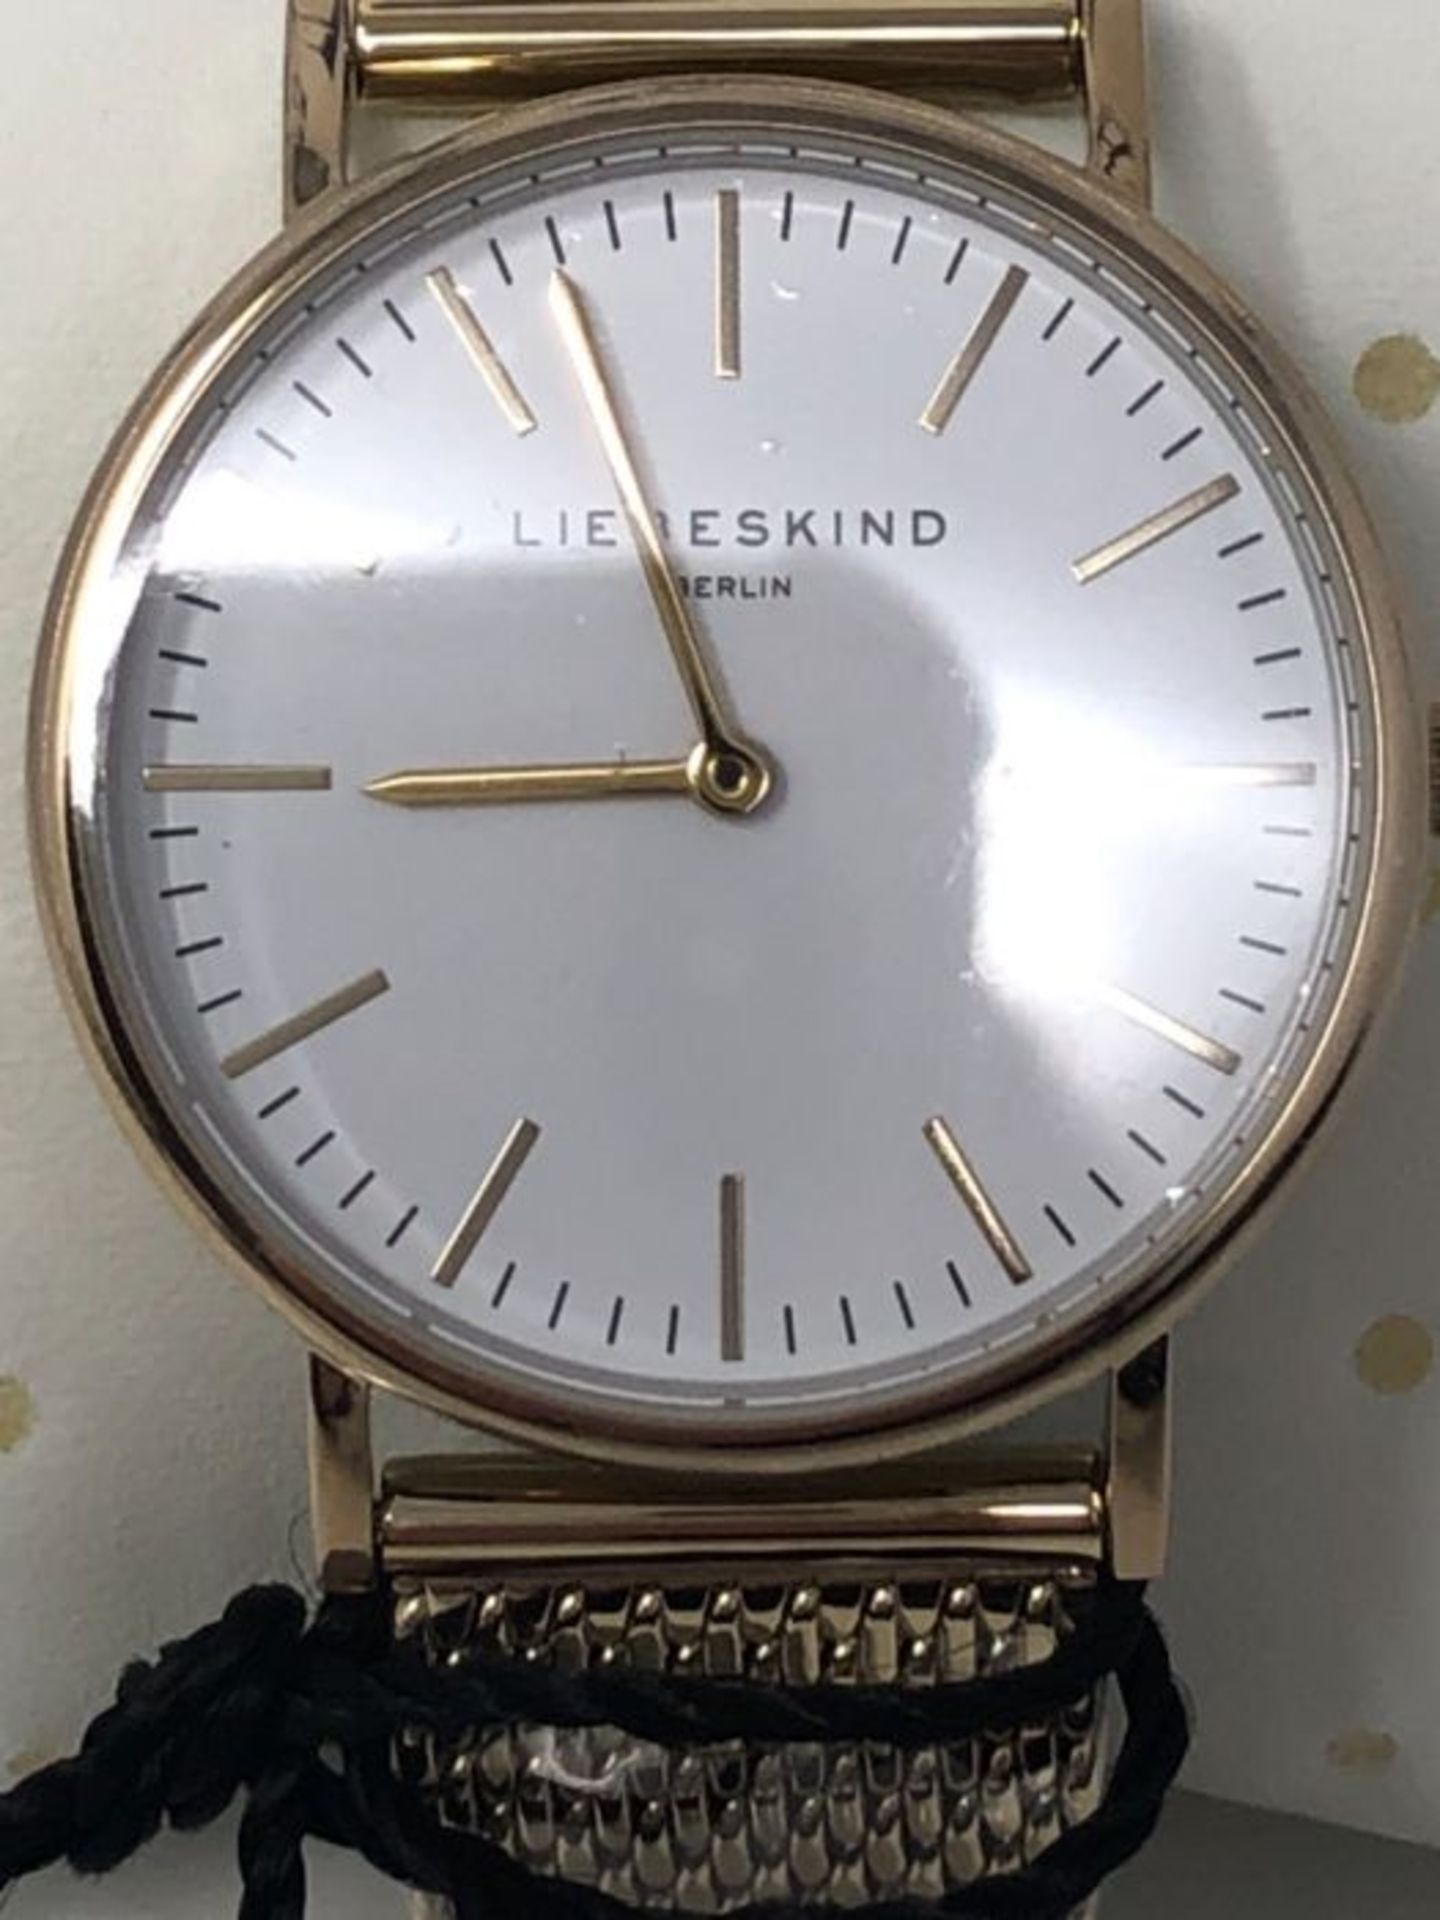 RRP £71.00 Liebeskind Berlin Damen Analog Quarz Uhr mit Edelstahl, IP gold-weiÃx - Image 6 of 6